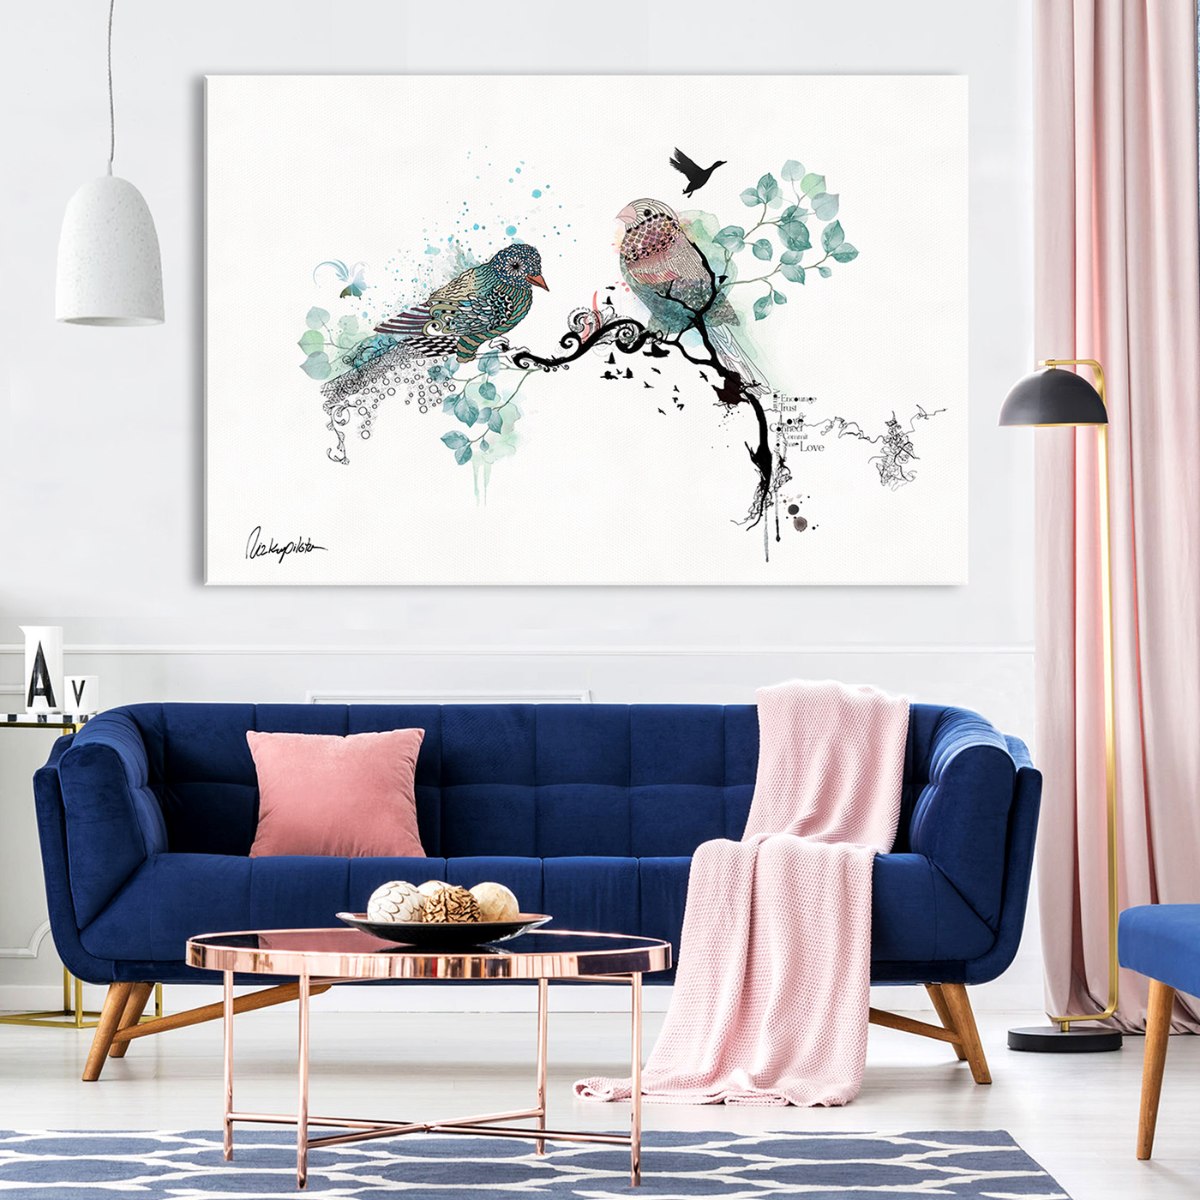 ציור של ציפורים - קנבס גדול- ליז קפילוטו